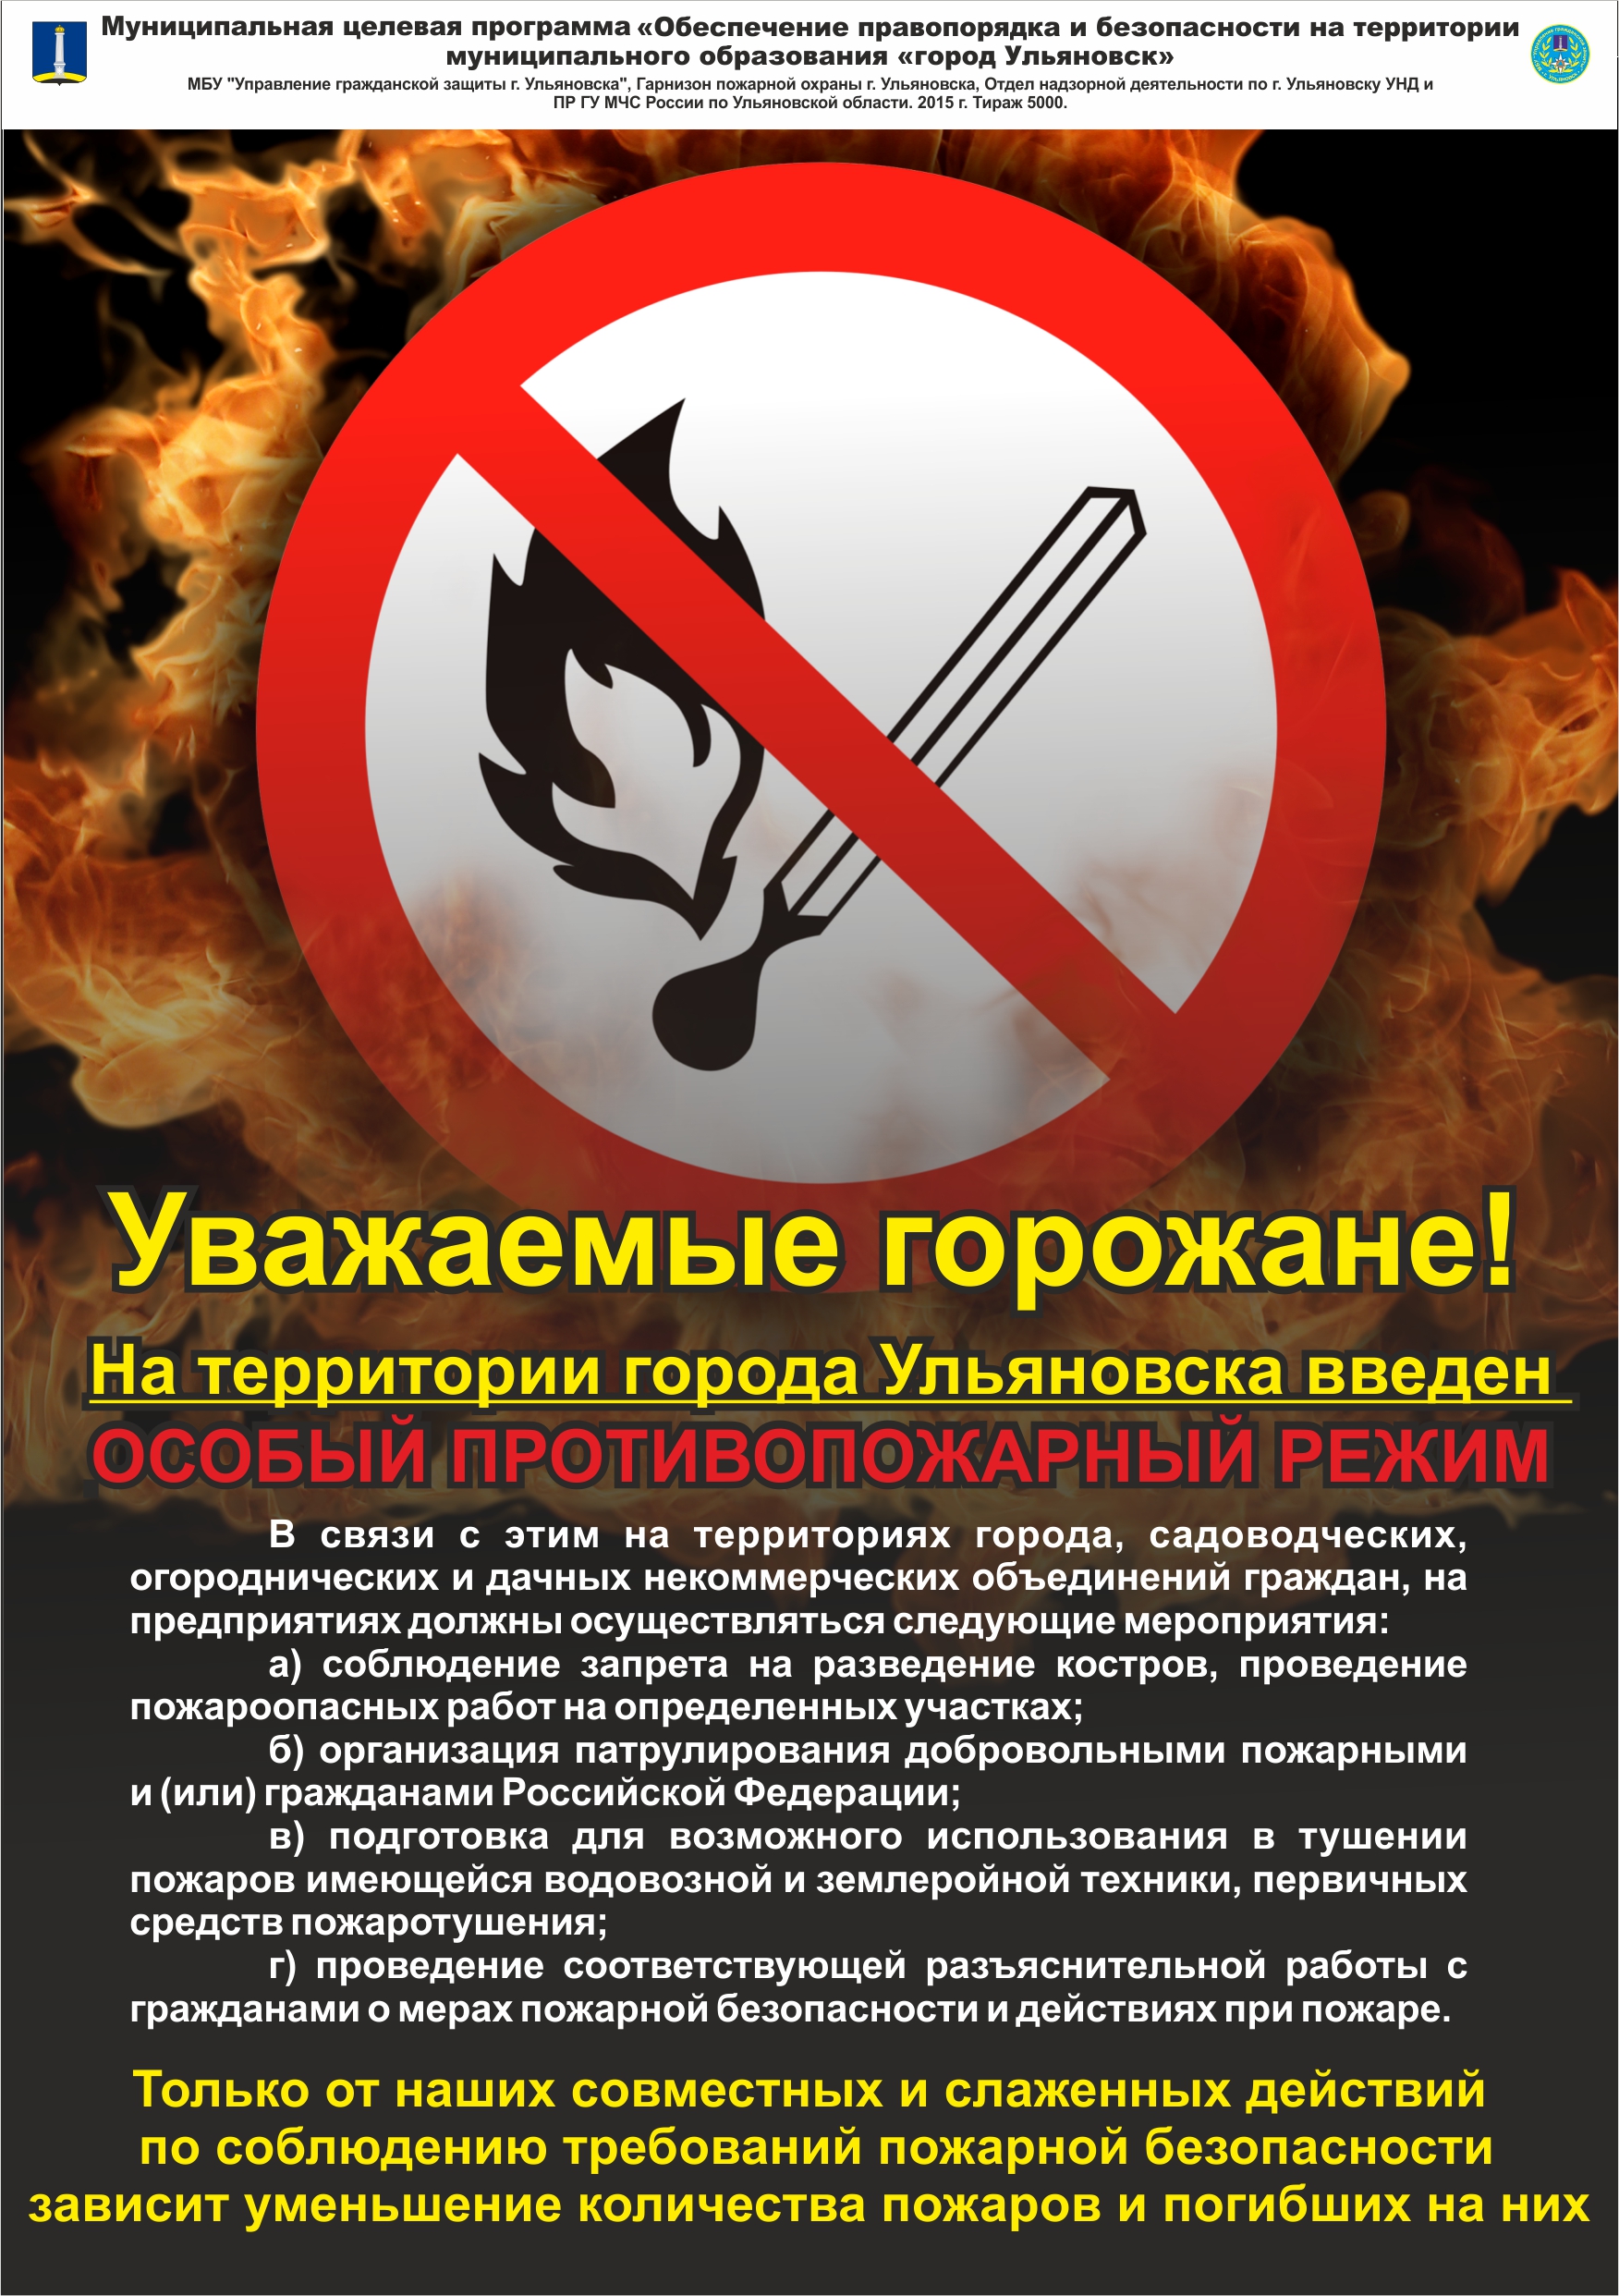 На территории Ульяновска вводится особый противопожарный режим.